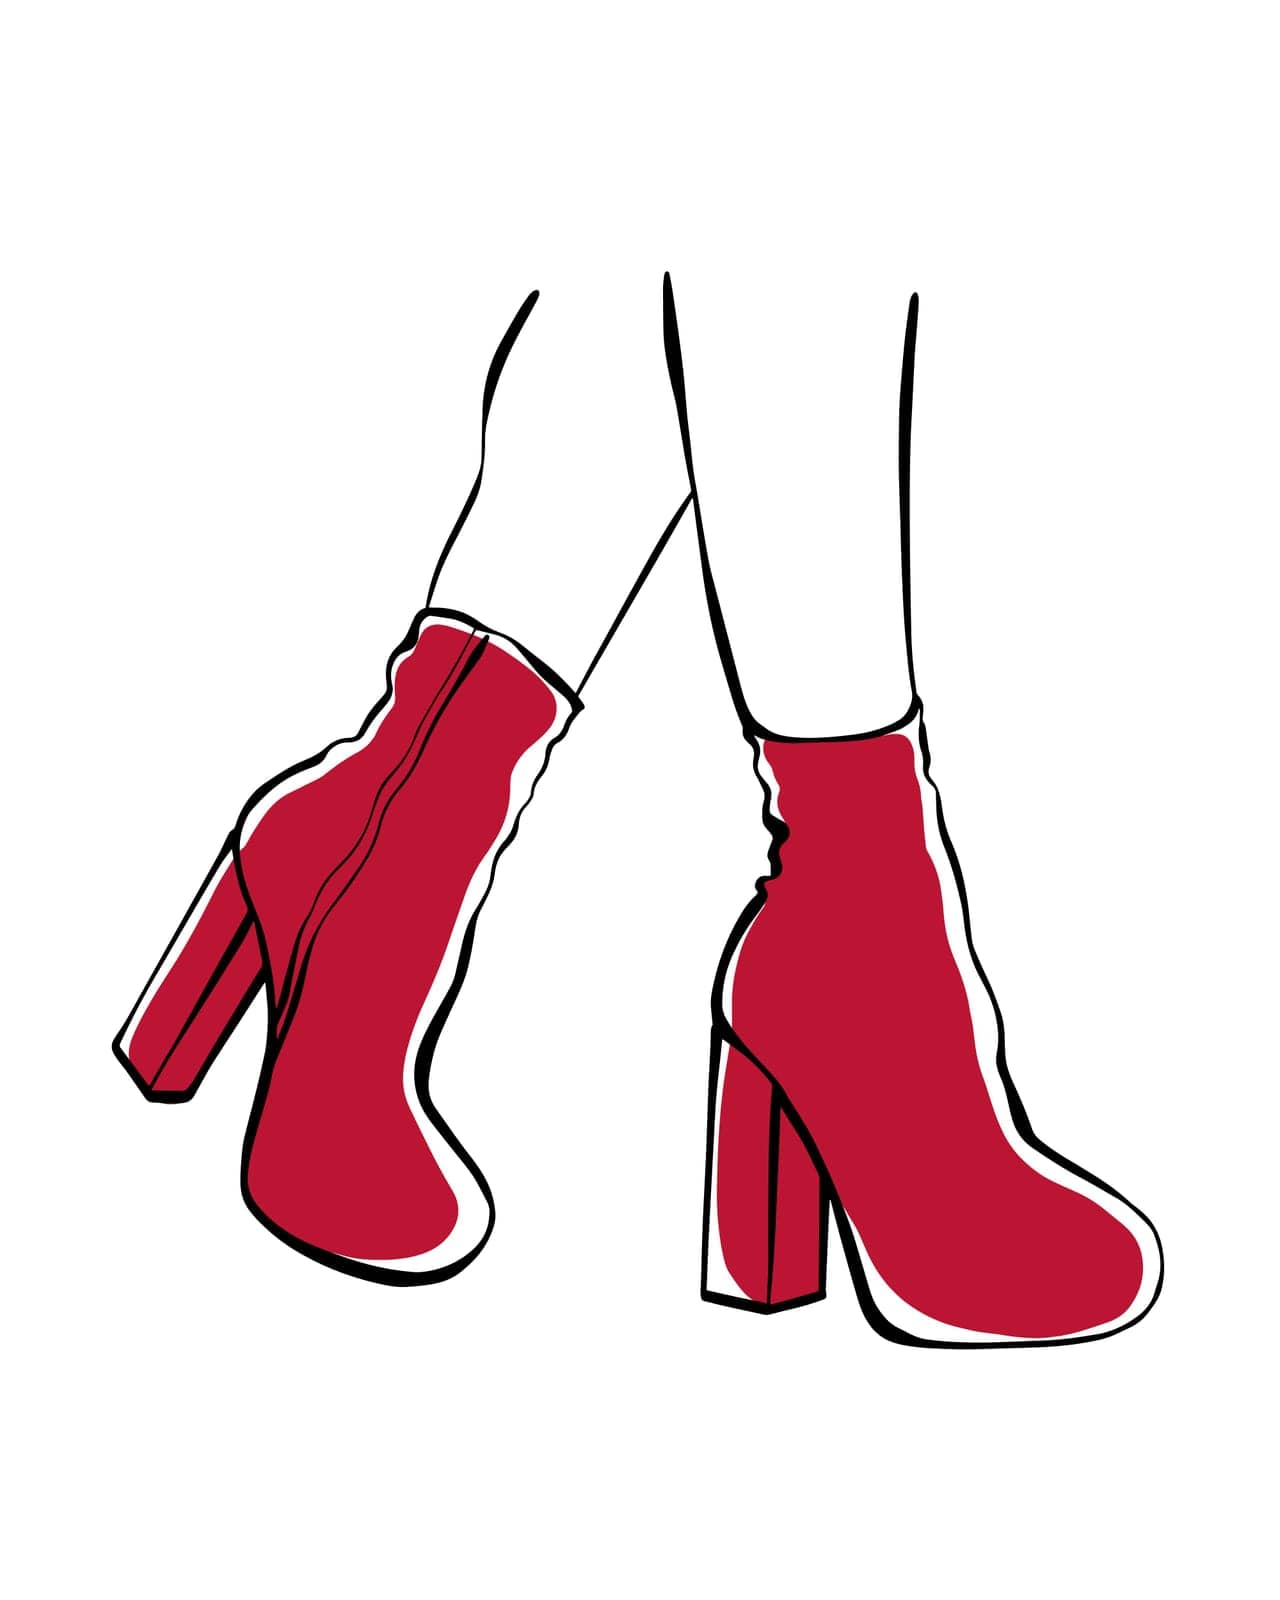 Women's feet in high heels. Fashion illustration. Womens feet in red shoes. Stylish womens shoes Sketch.